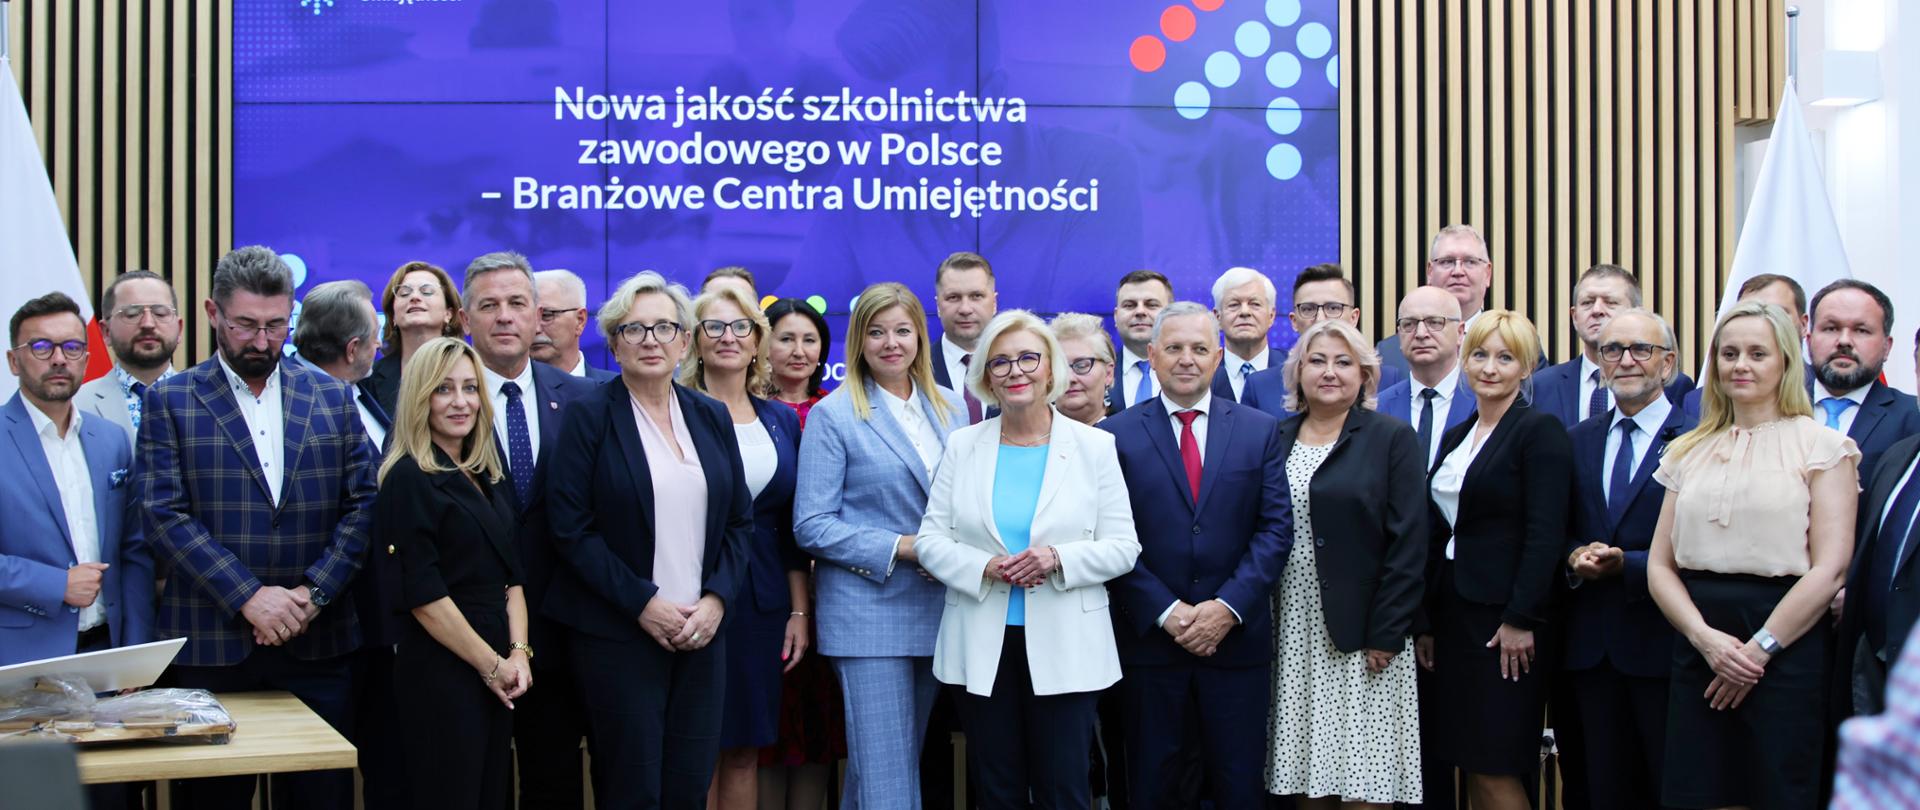 Grupa osób pozujących do zdjęcia, w tle błękitny ekran z napisem Nowa jakość szkolnictwa zawodowego w Polsce – podpisanie pierwszych umów w ramach Branżowych Centrów Umiejętności